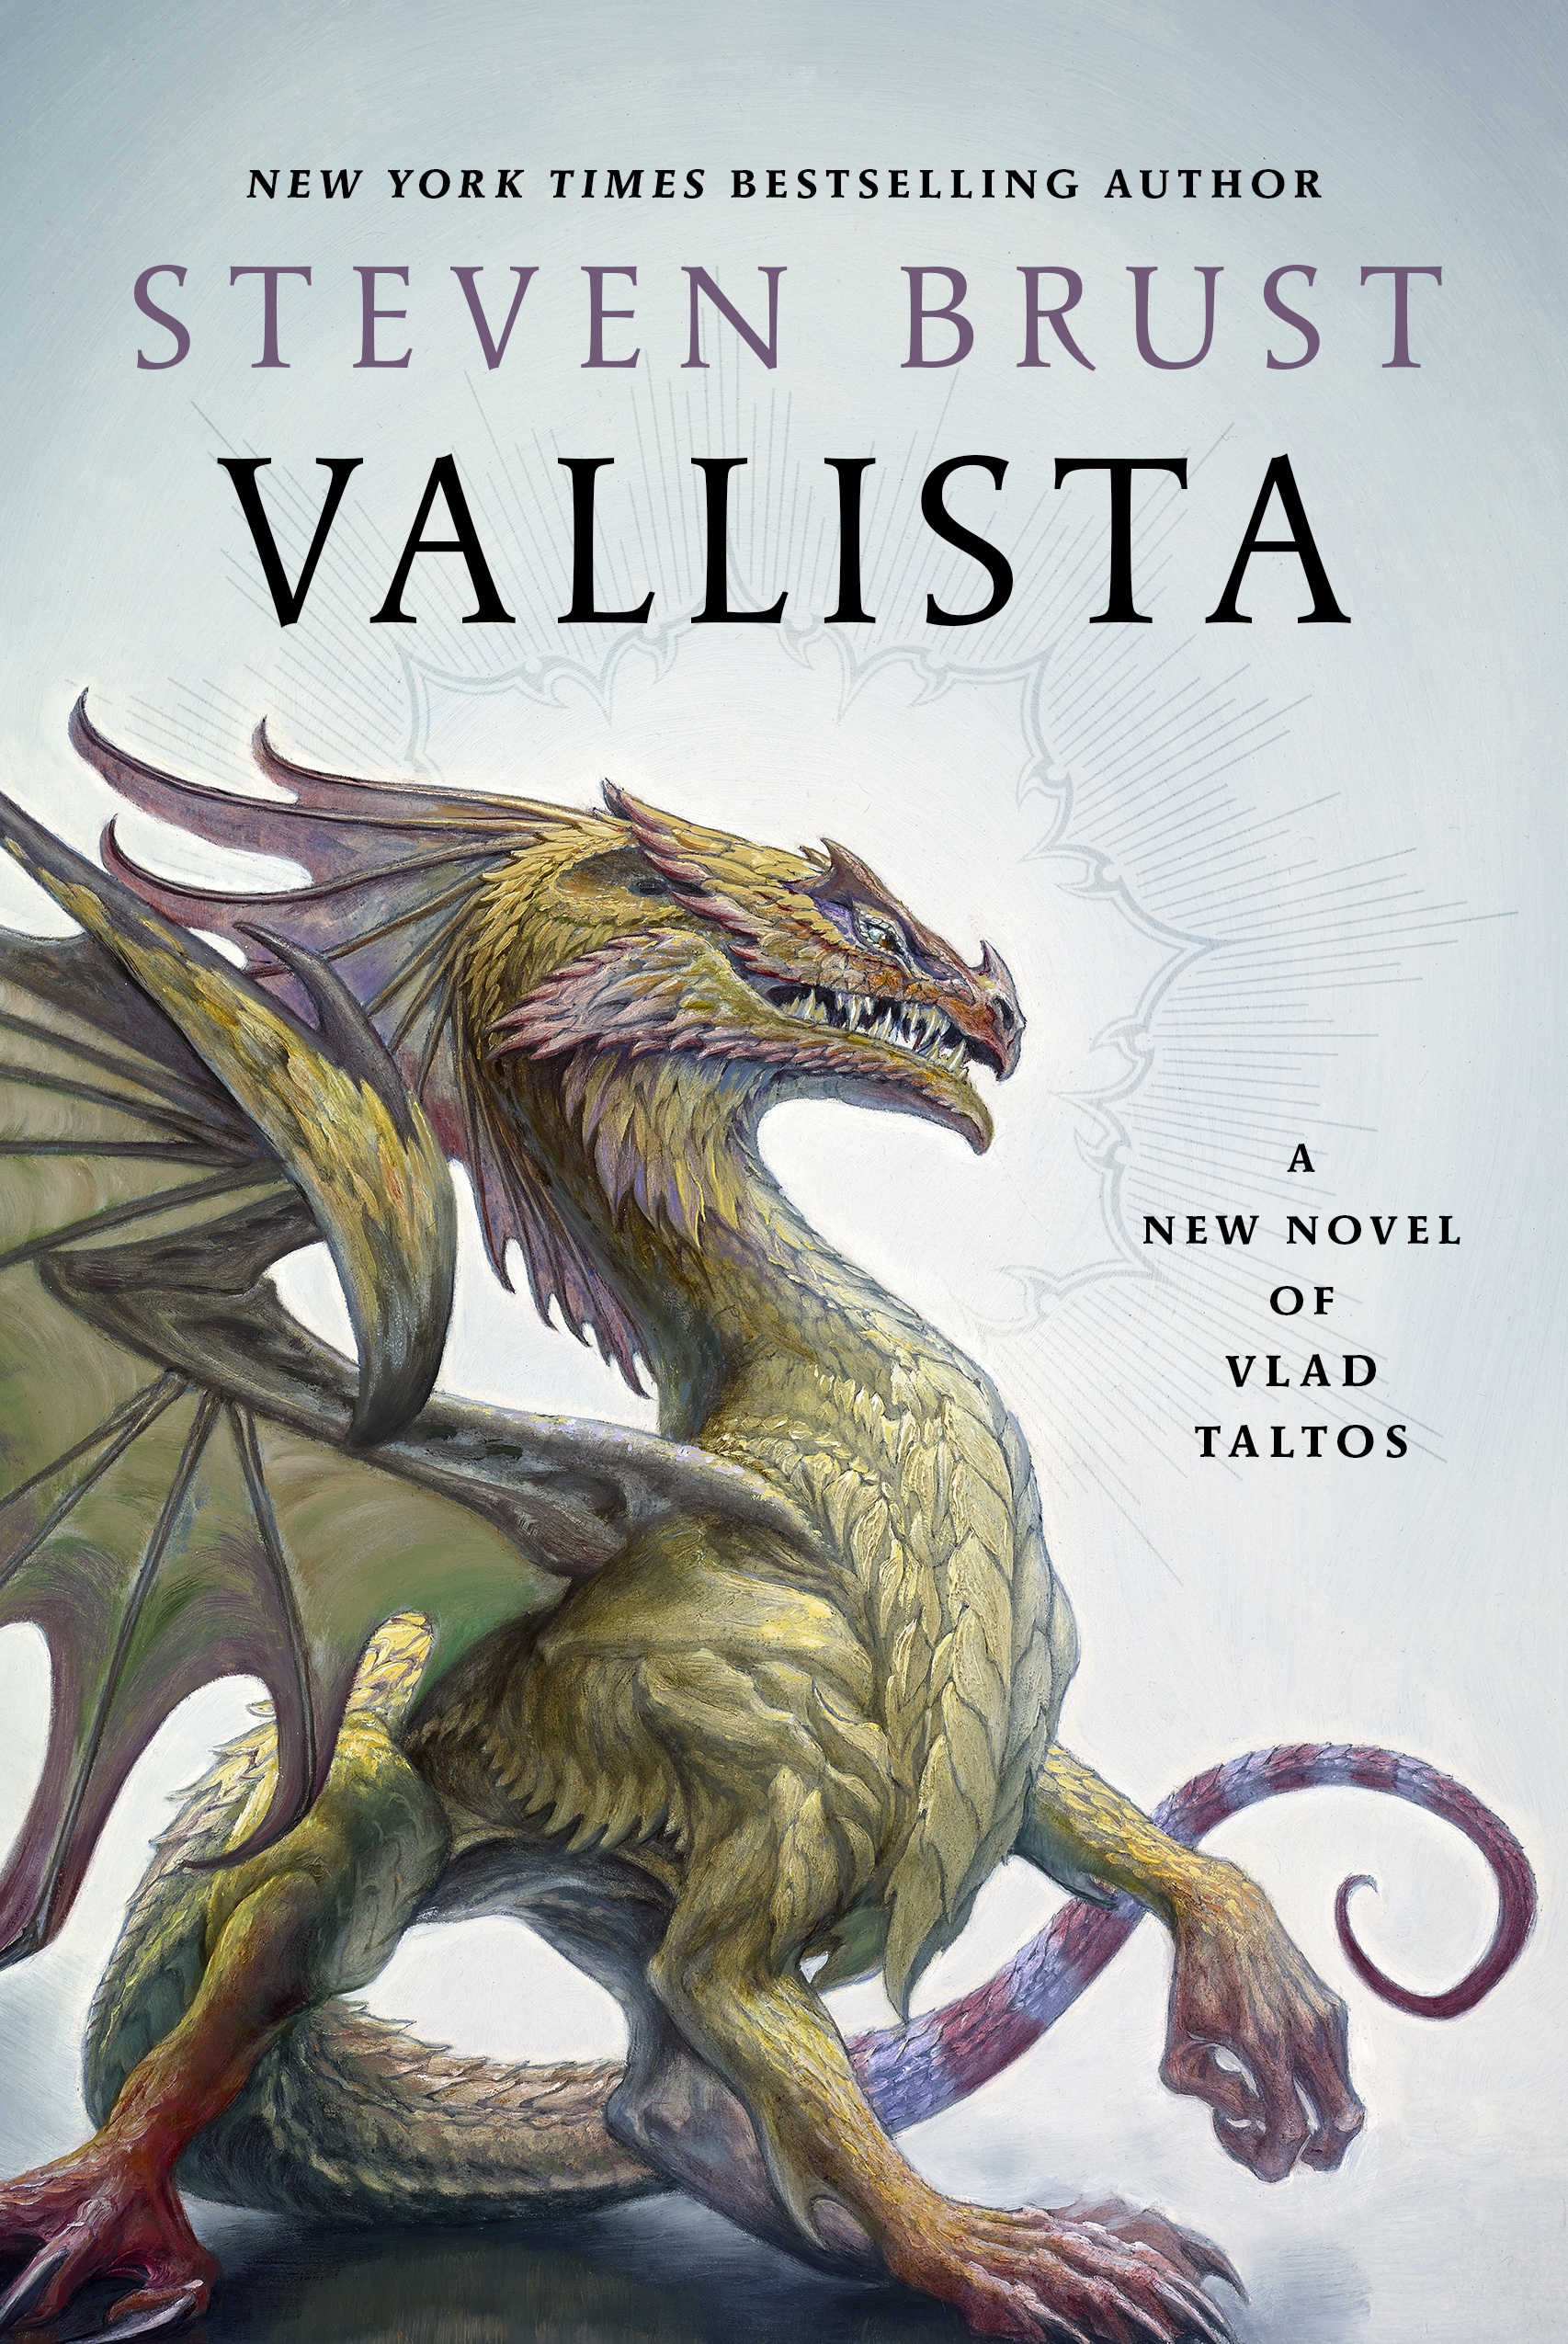 Vallista : A Novel of Vlad Taltos by Steven Brust